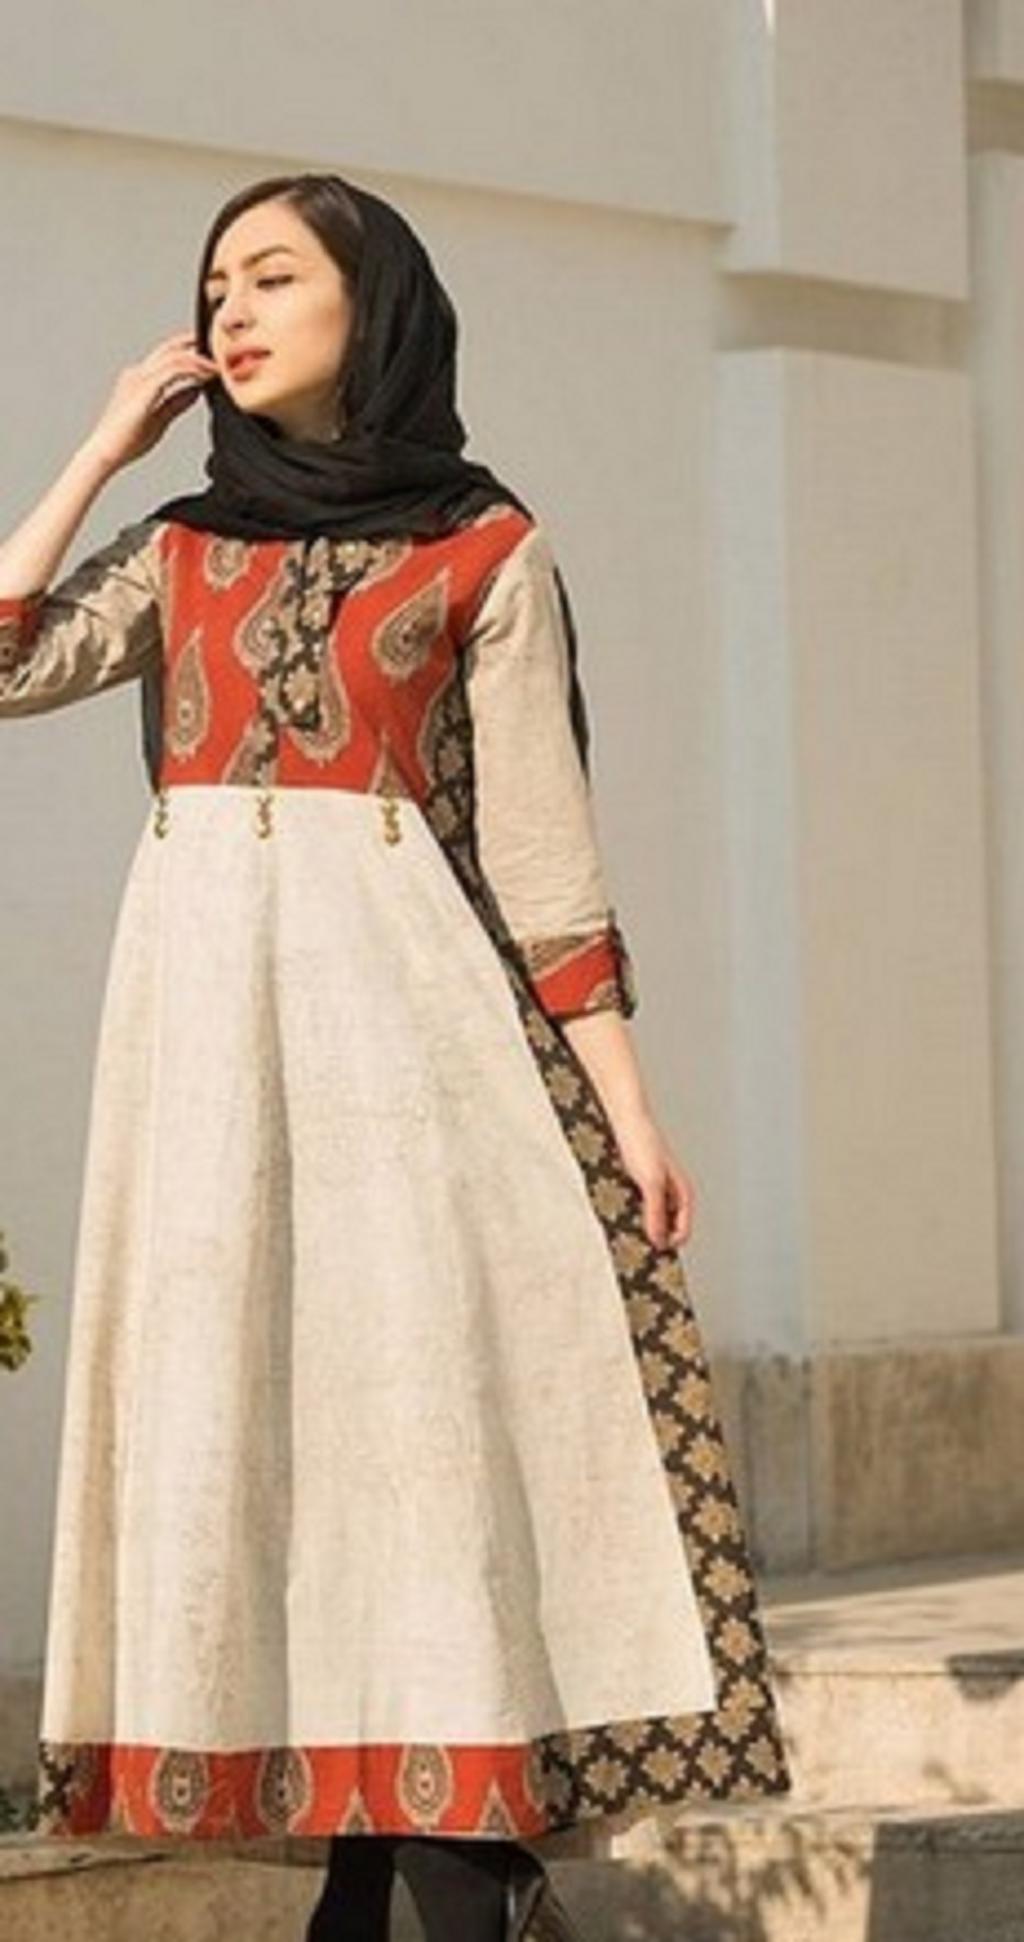 لباس خانگی برای عید اینستاگرام 8